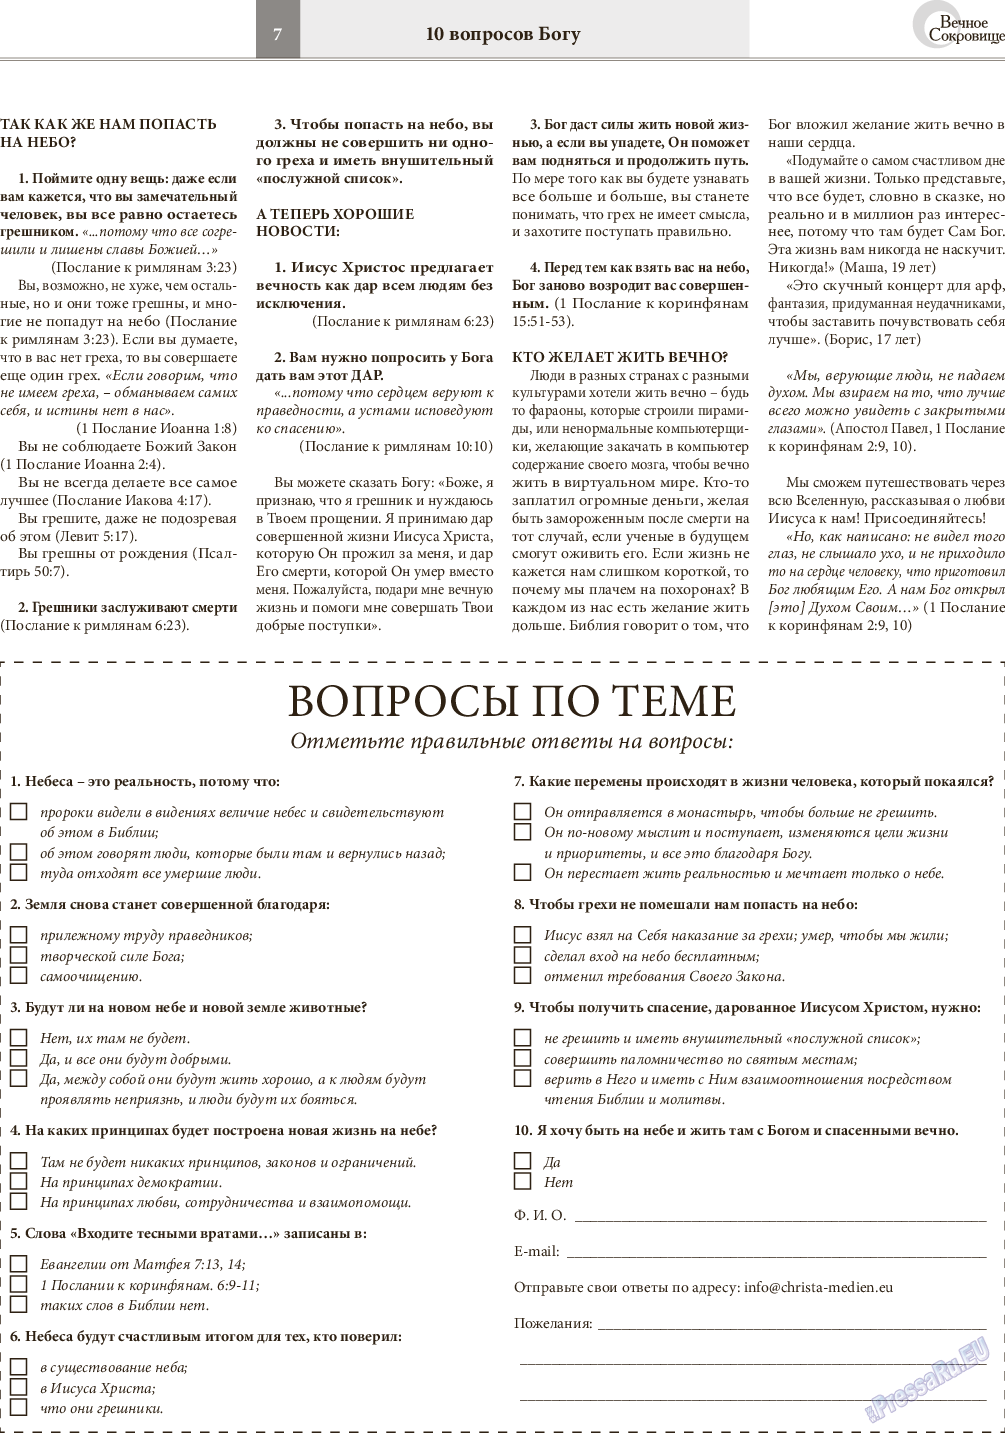 Вечное сокровище, газета. 2015 №5 стр.7